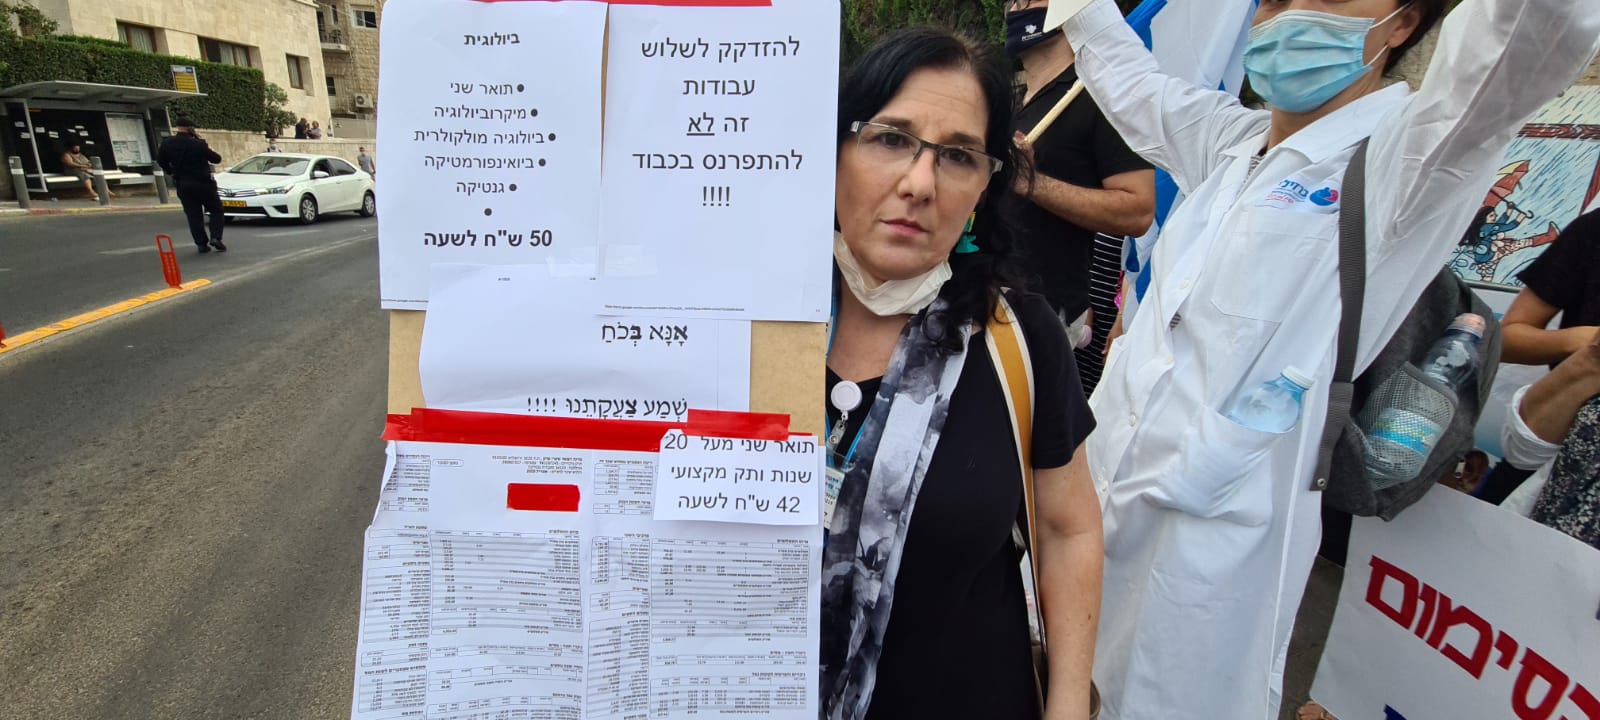 אסתר קורזין, עובדת מעבדה, בהפגנת עובדי המעבדות מול מעון ראש הממשלה, 1 בספטמבר 2020 (צילום: דפנה איזברוך)